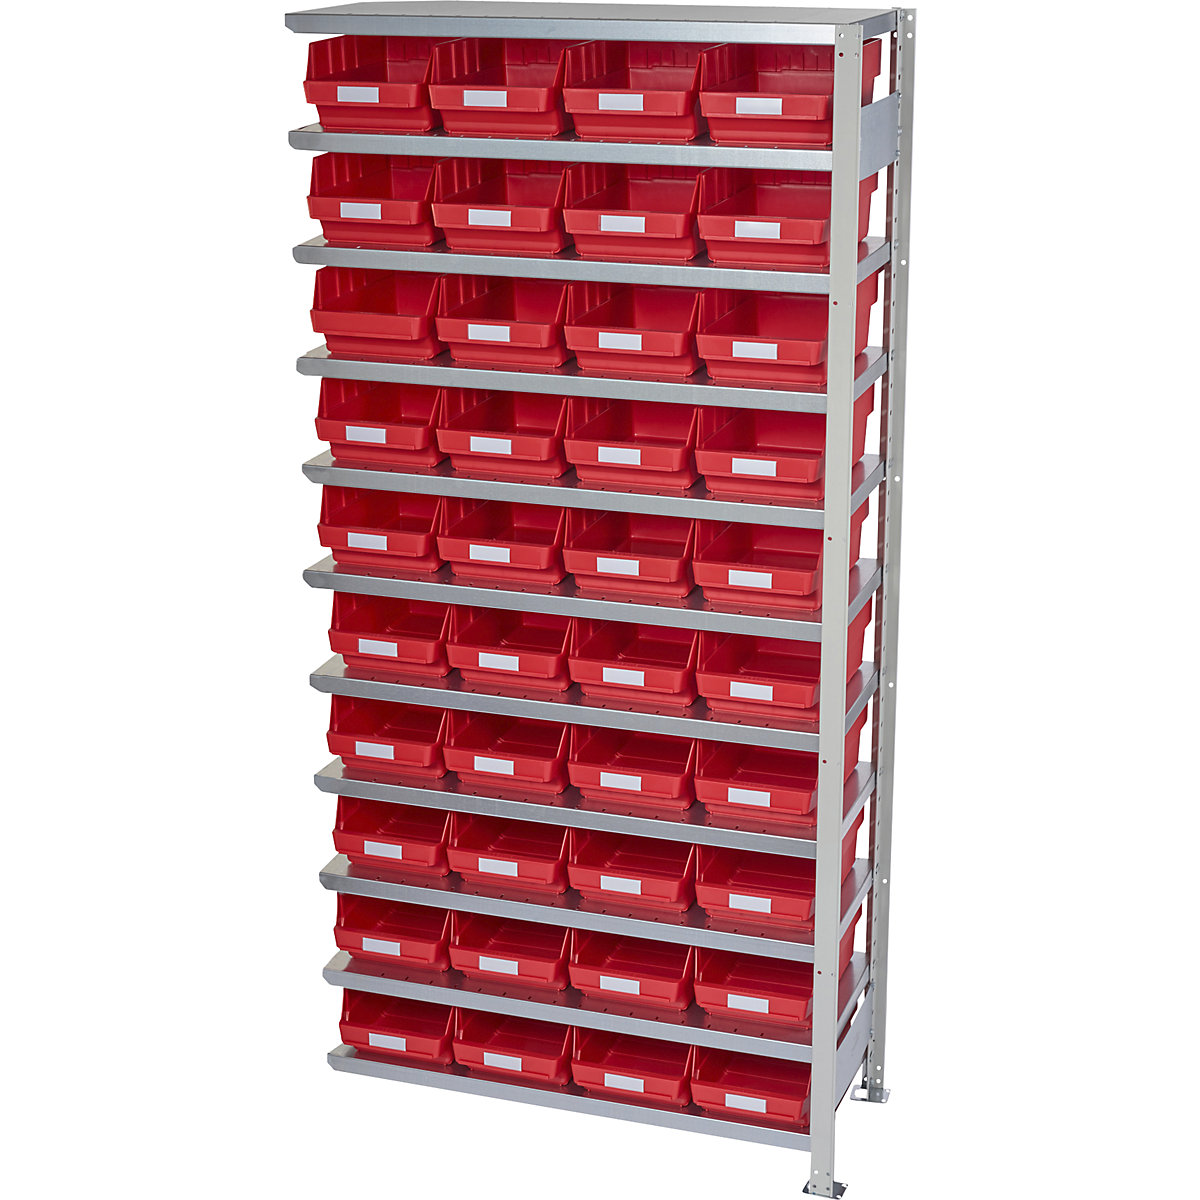 Összedugaszolós állvány dobozokkal – STEMO, állványmagasság 2100 mm, bővítő állvány, 400 mm mély, 40 piros doboz-5